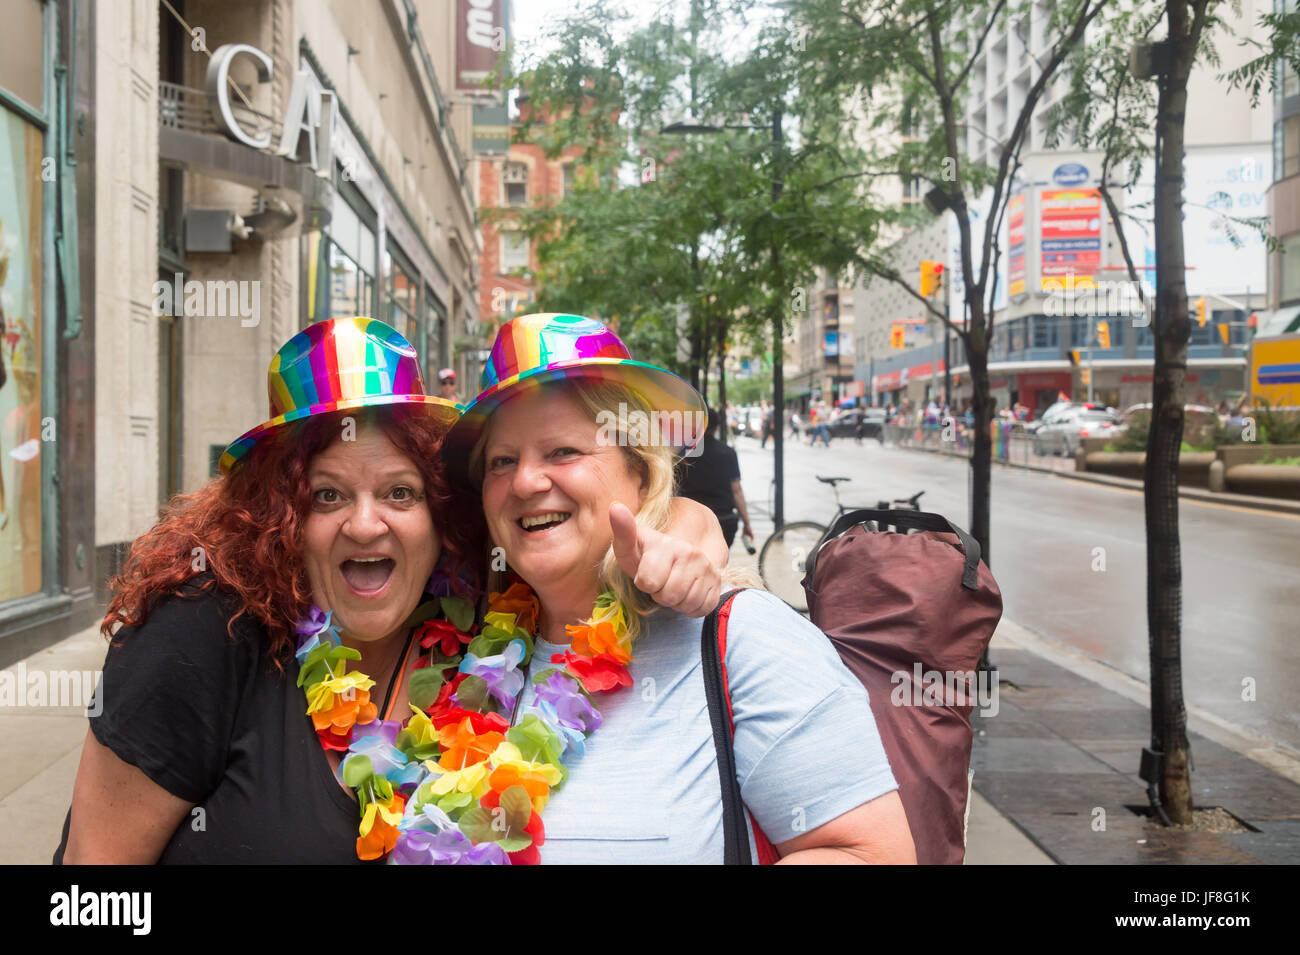 Toronto, Canada - 25 juin 2017 : deux femmes posant pour la caméra avant de la parade de la fierté gaie de Toronto Banque D'Images